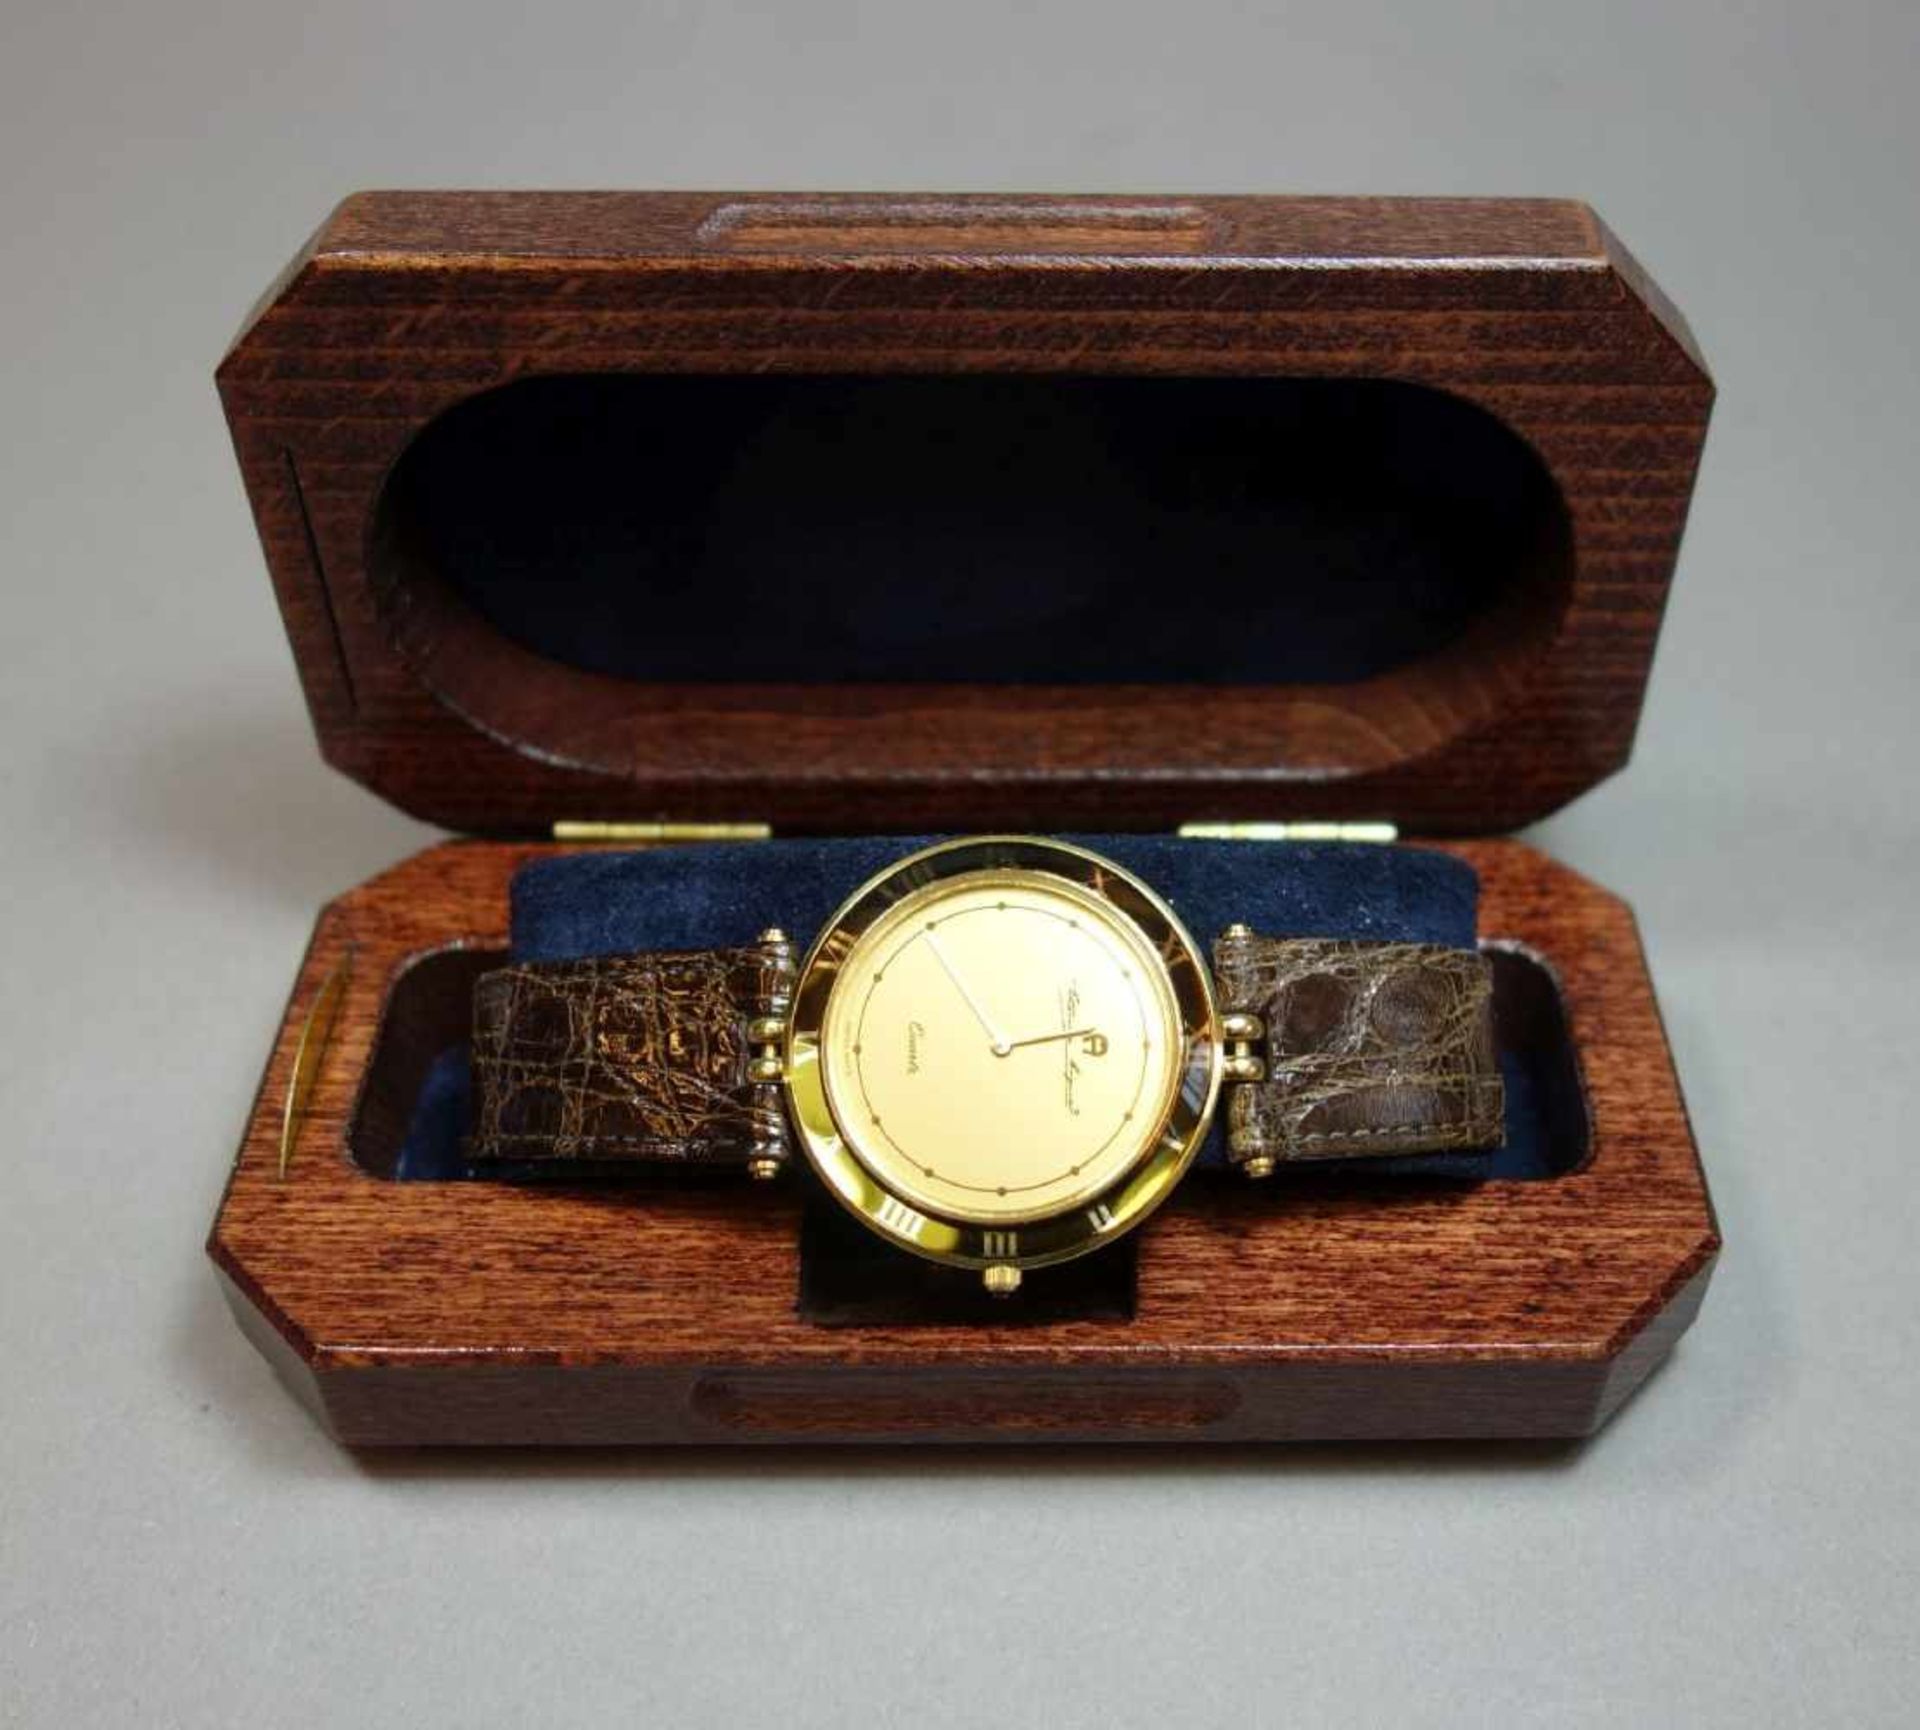 GOLDENE ARMBANDUHR ETIENNE AIGNER / wristwatch, Quarz-Uhr, Manufaktur Etienne Aigner AG / München. - Image 6 of 7